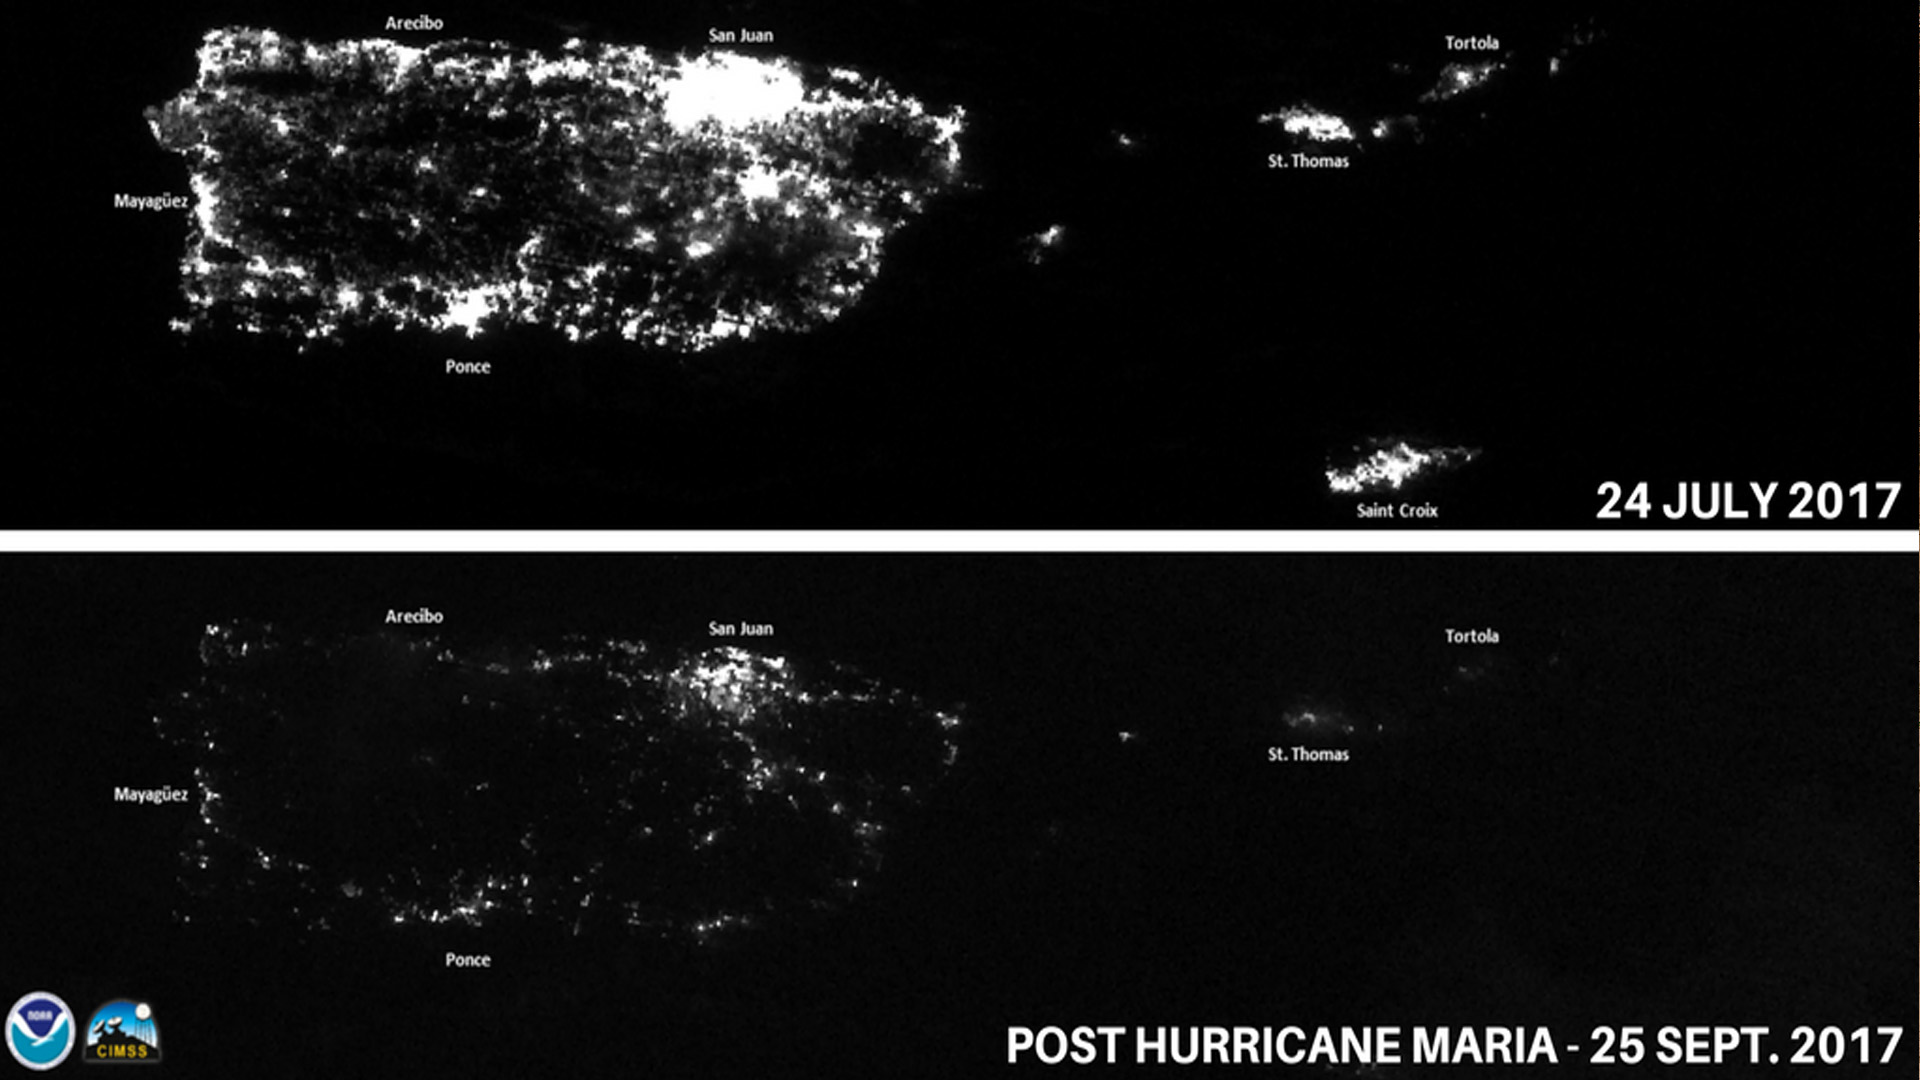 Comparação de luzes à noite em Porto Rico antes (em cima) e depois (abaixo) do furacão Maria. Crédito: NOAA.